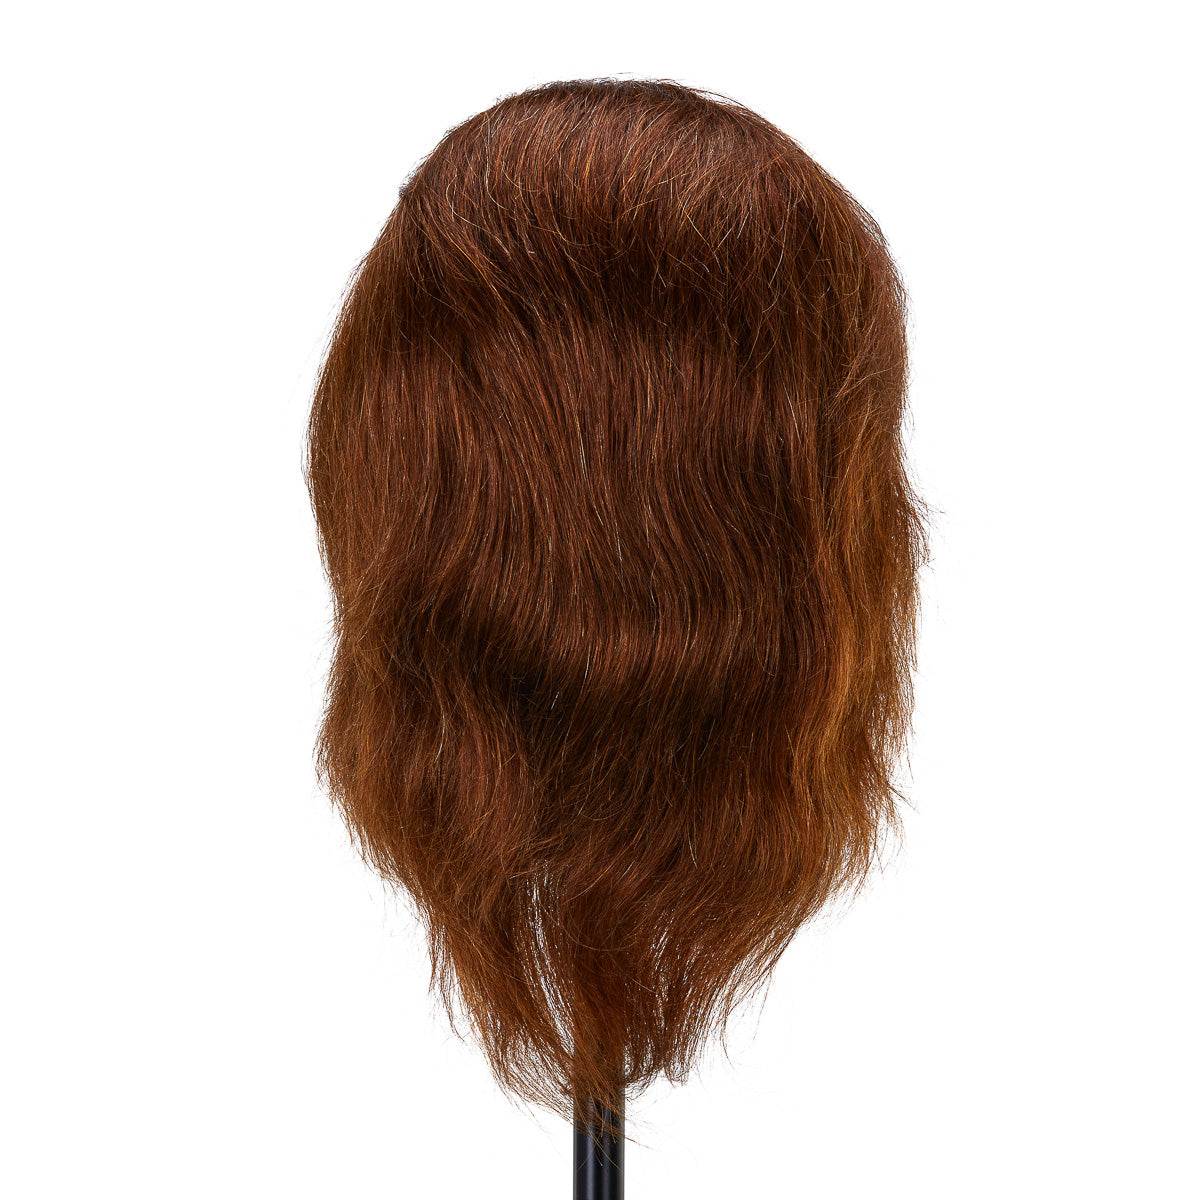 Gabbiano WZ3 Hairdressing Training Head, Natural Hair, Colour 4#, Length 8"